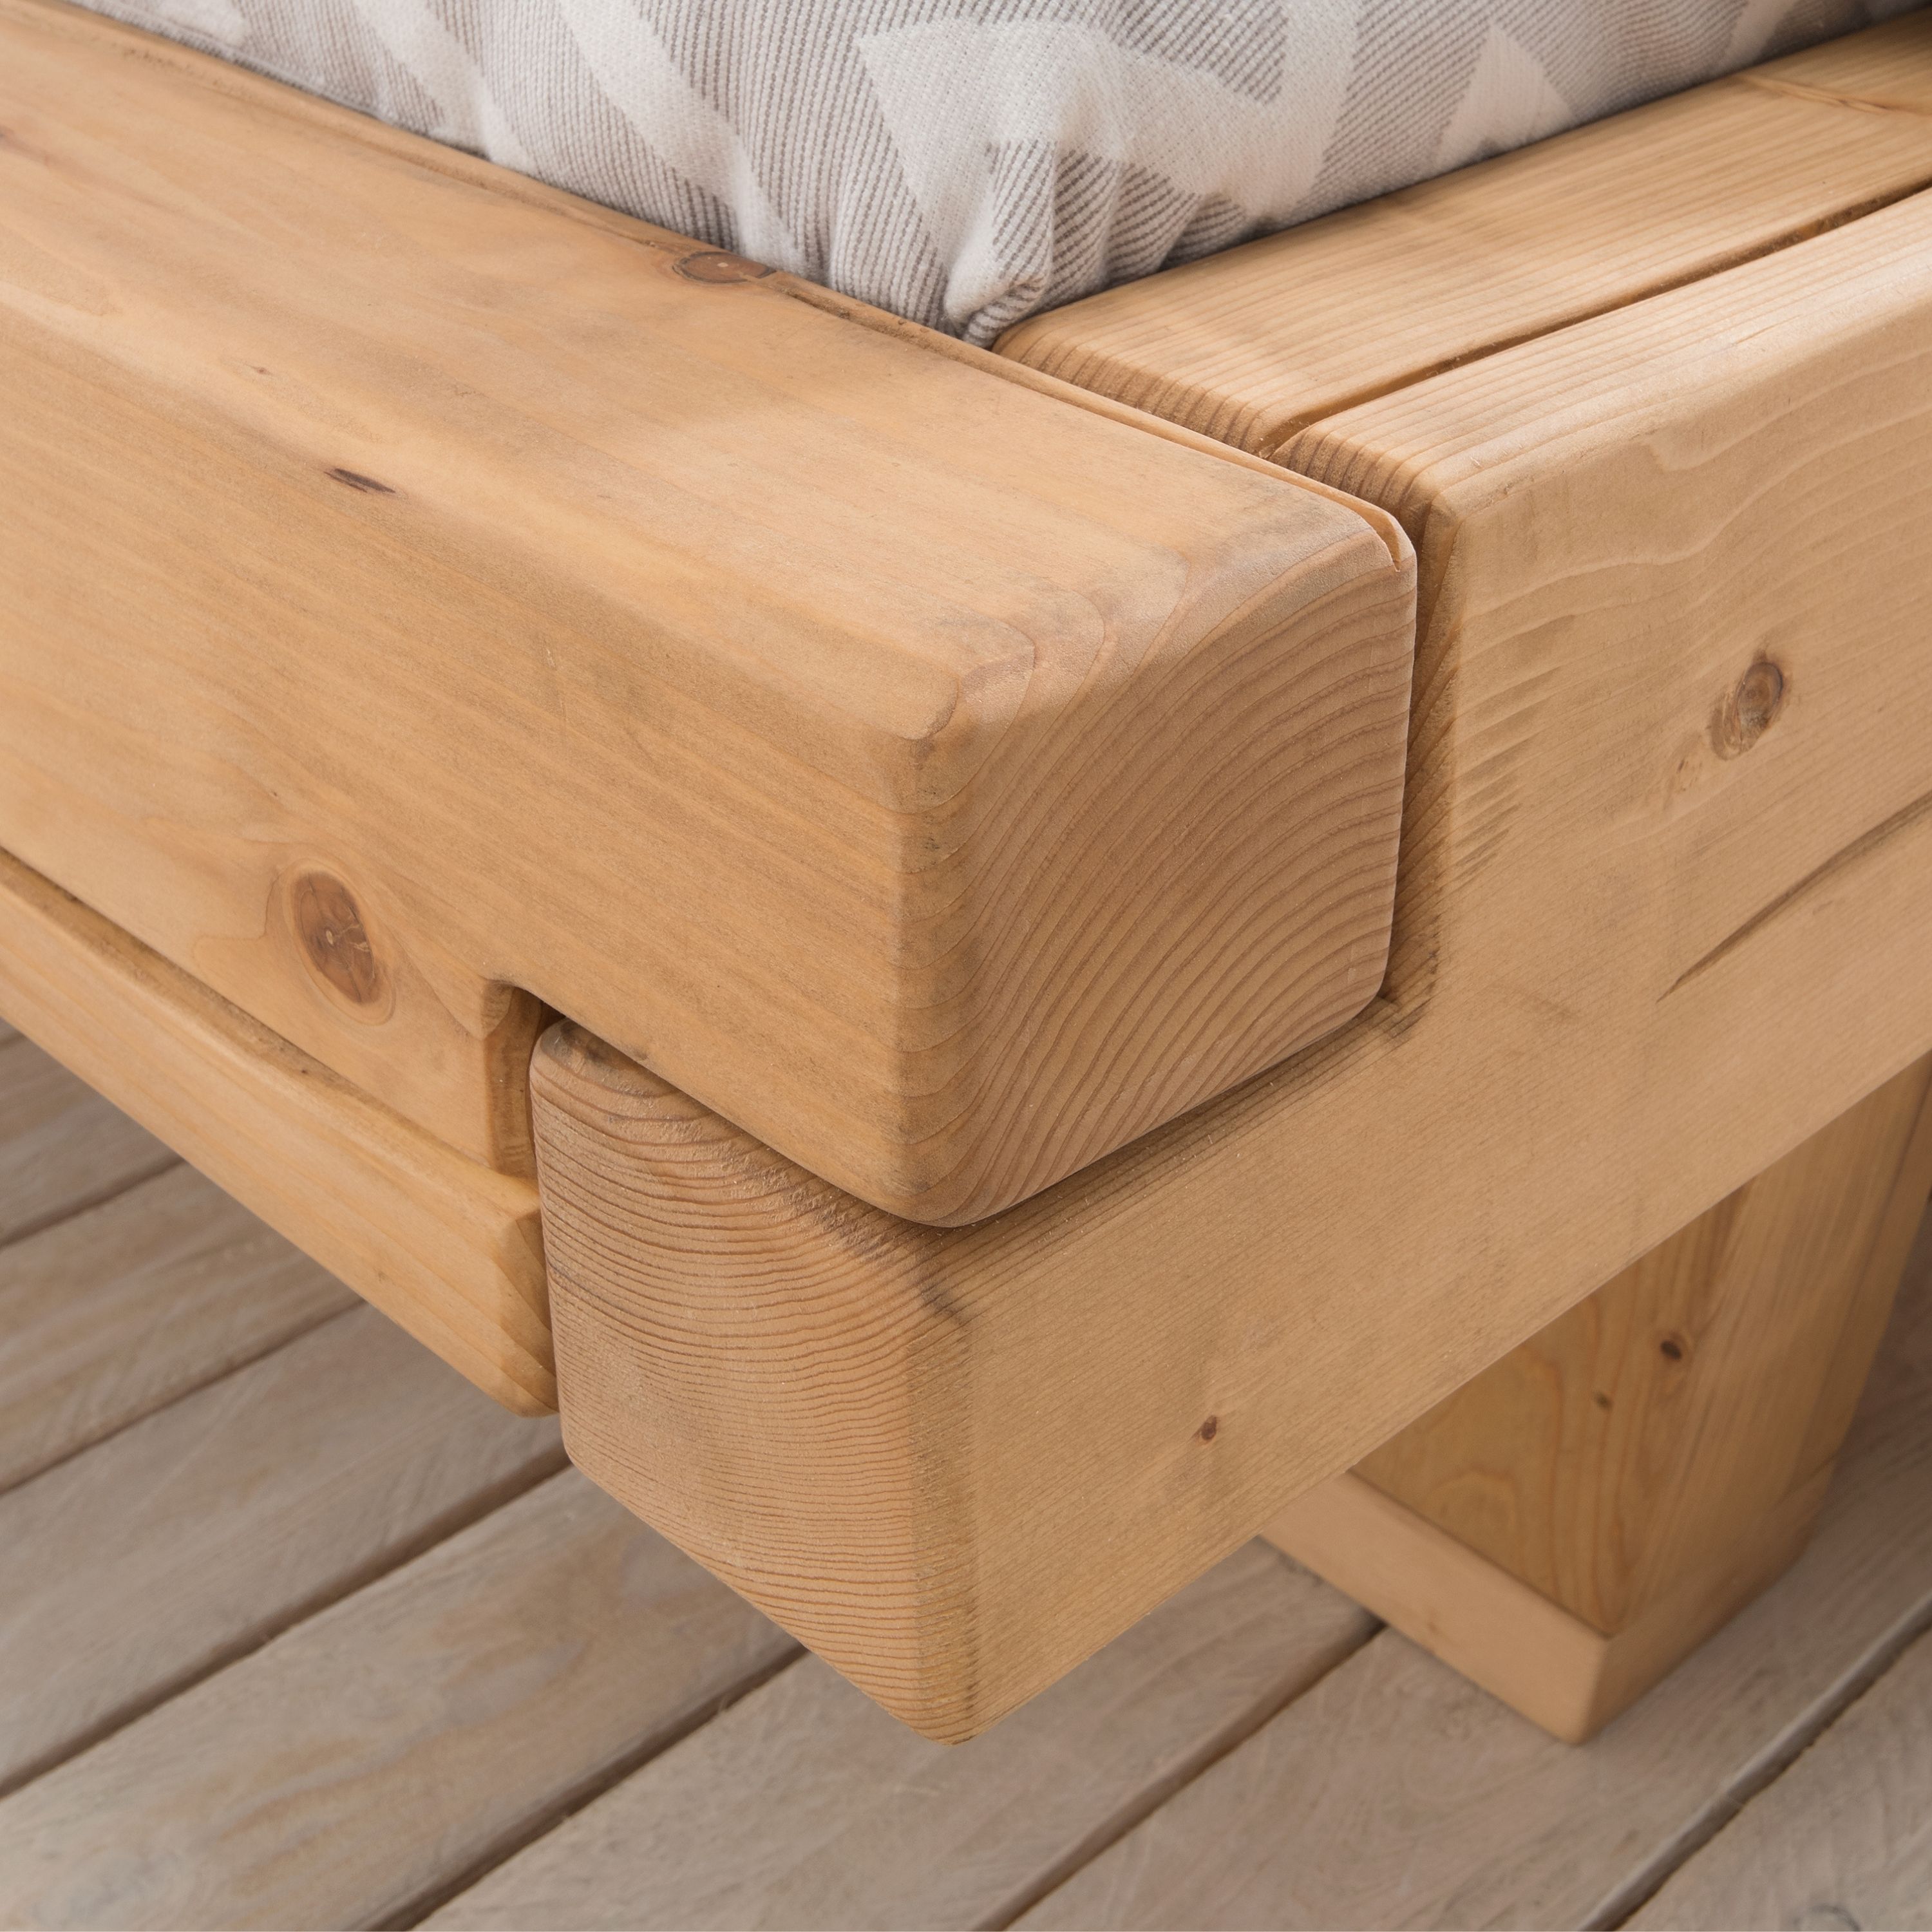 Bubema Mondera – Massivholz Balken-Bett mit Kopfteil, Holzfüße in Kufenform